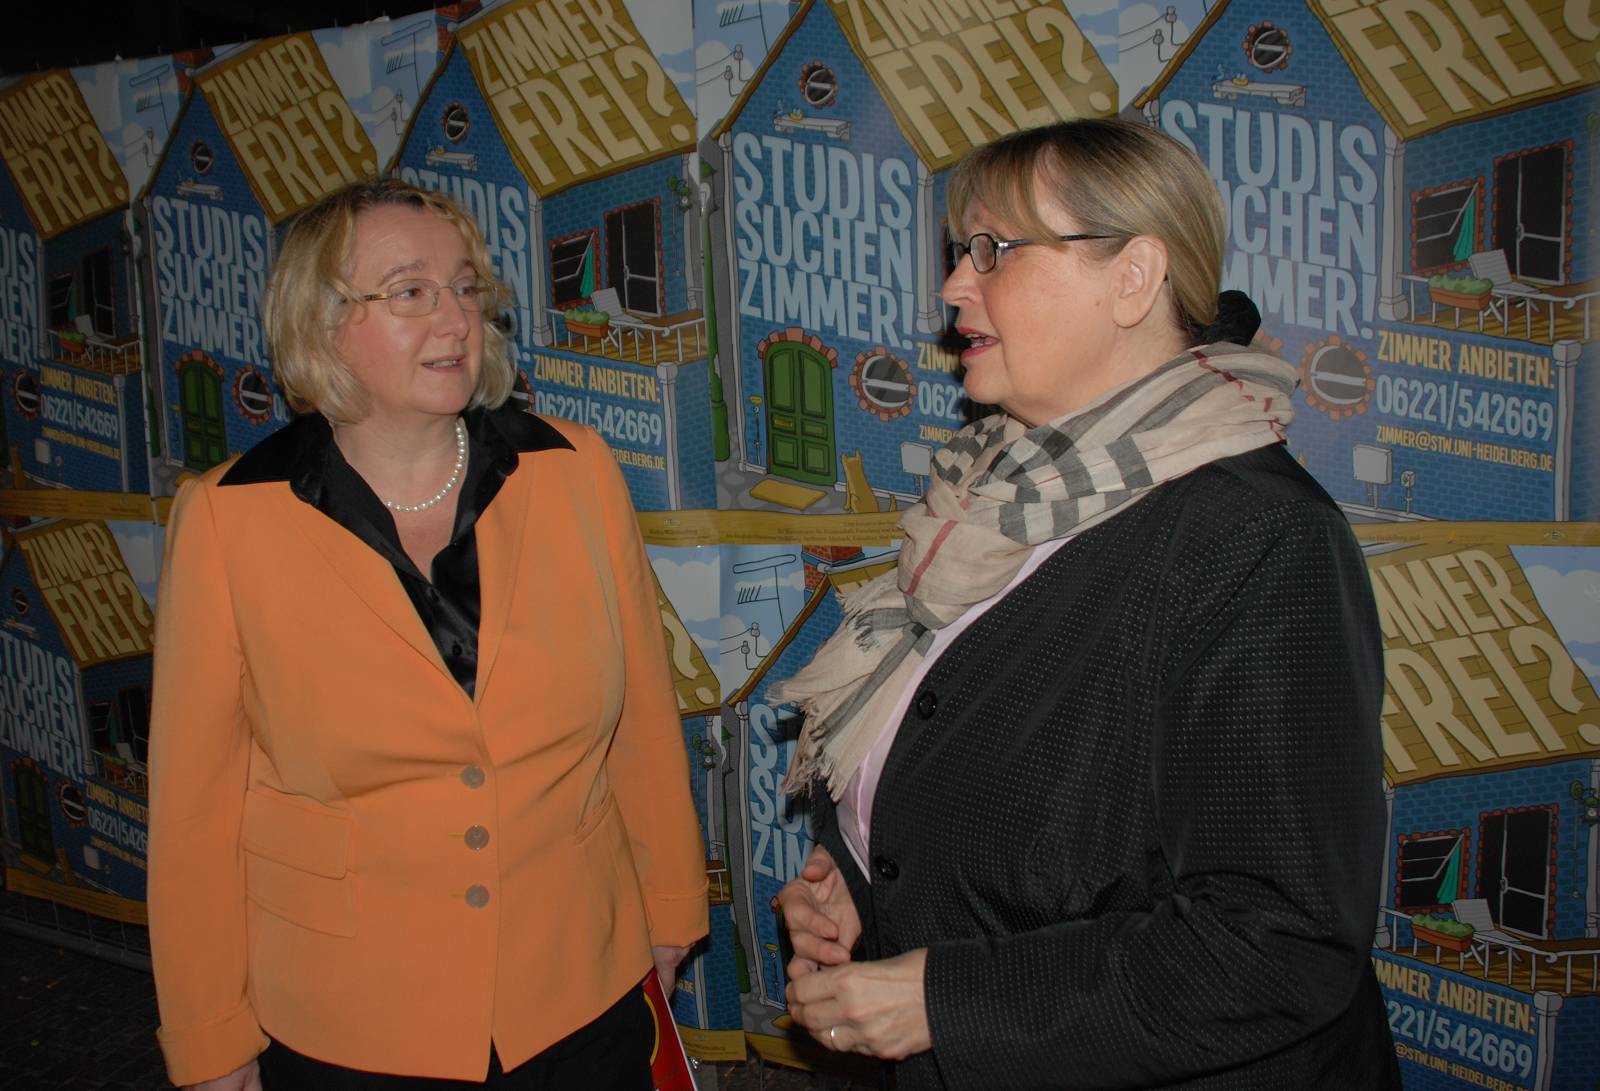 Theresia Bauer und Ulrike Leiblein im Gespräch vor einer Plakatwand zu "Studis suchen Zimmer"